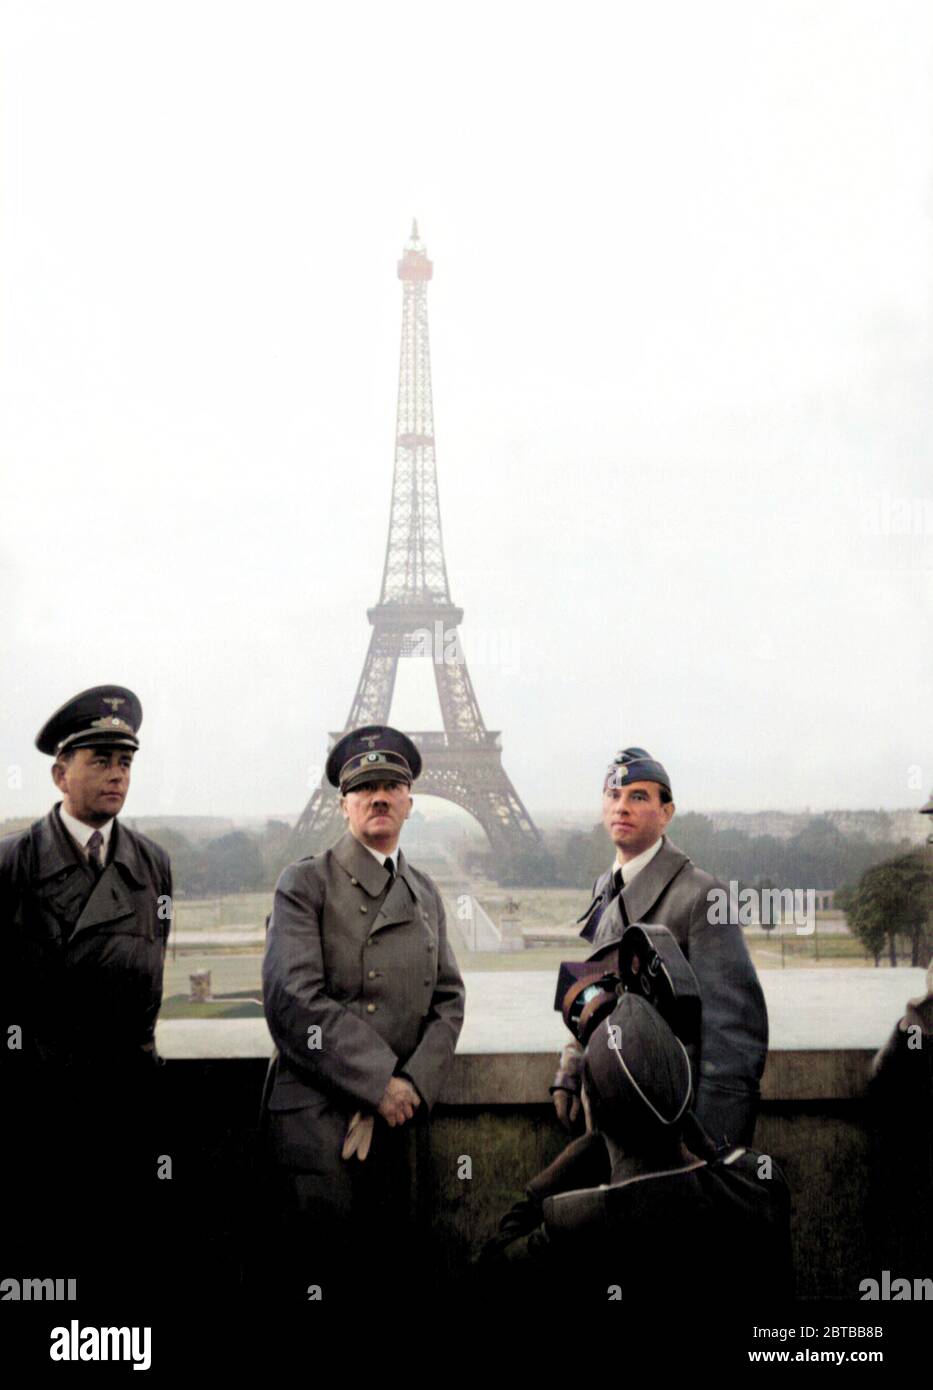 1940 , 23 juin, Paris , FRANCE : Le dictateur allemand de Fuhrer ADOLF HITLER ( 1889 - 1945 ) avec l'architecte ALBERT SPEER ( 1905 - 1981 ) (à gauche) et le sculpteur ARNO BRECKER ( 1900 - 1991 ) au Trocadéro à Paris , en arrière-plan la tour Eiffel . Propagande photo par le photographe personnel d'Hitler Heinrich Hoffmann . COLORISÉ NUMÉRIQUEMENT . - SECONDE GUERRE MONDIALE - NAZI - NAZIST - NAZAÏSME - NAZISTA - NAZISMO - SECONDA GUERRA MONDIALE - DITTATORE - POLITICA - POLICO - PARIGI - ARCHITETTO - ARCHITETURA - ARCHITECTURE --- ARCHIVIO GBB Banque D'Images